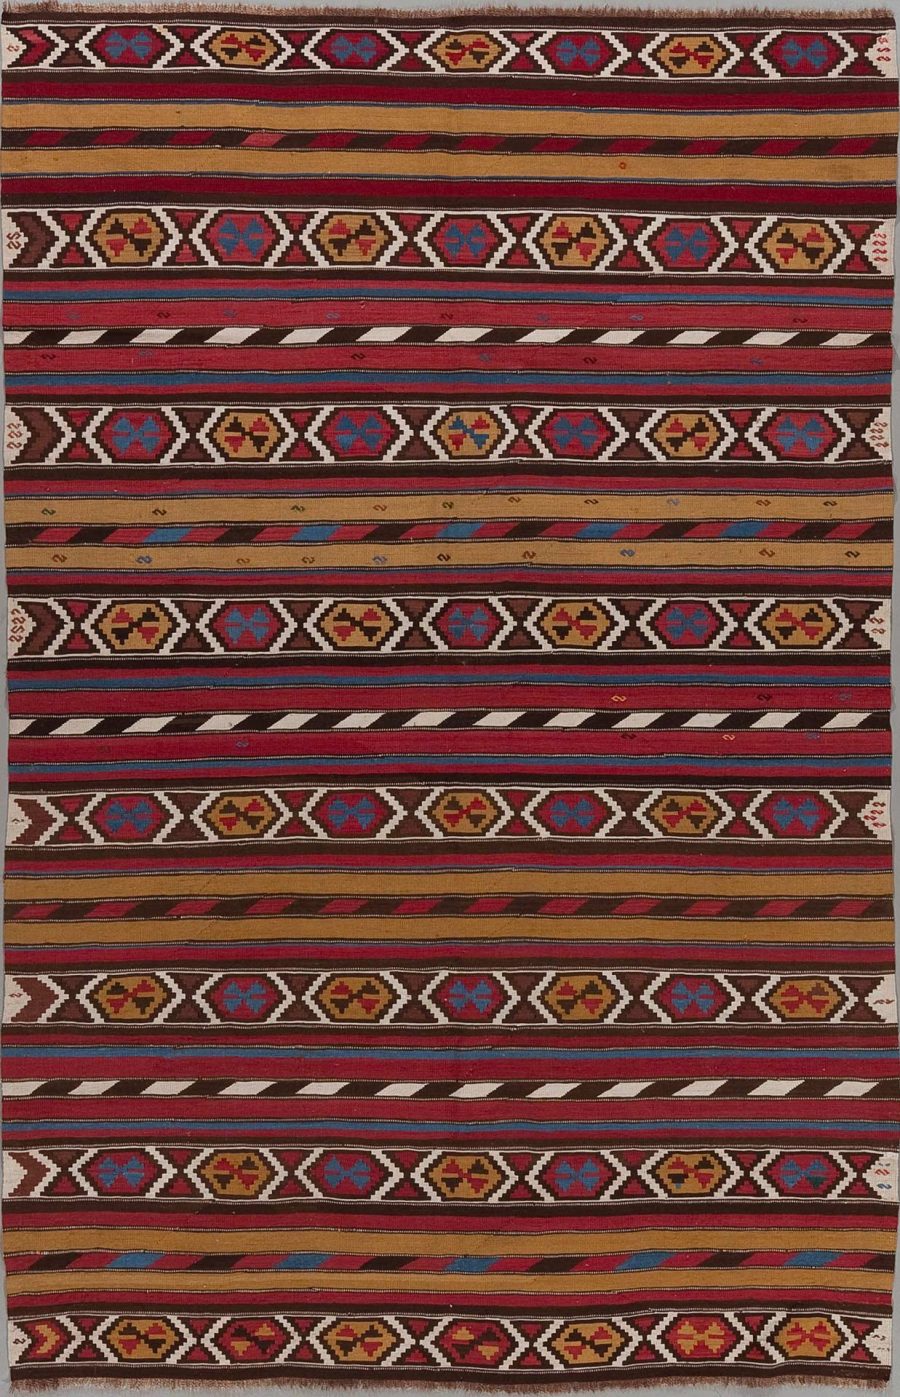 Traditioneller gewebter Teppich mit mehrfarbigen, horizontalen Streifen und geometrischen Mustern in Rot, Blau, Braun und Beige.